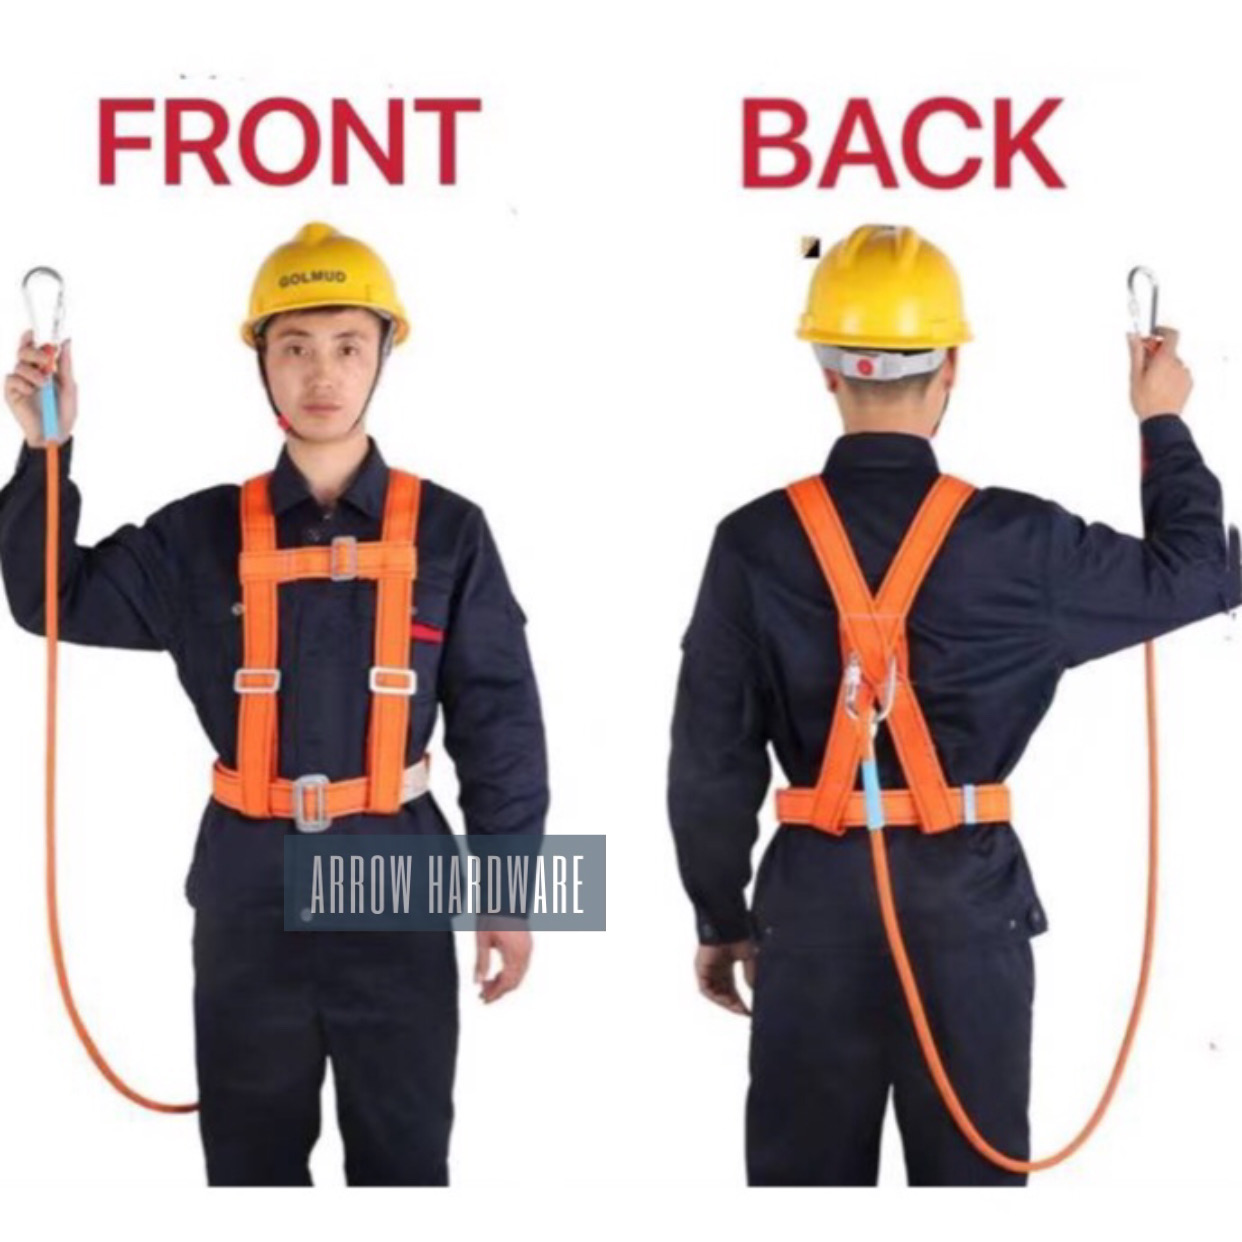 Buy Pole Harness online